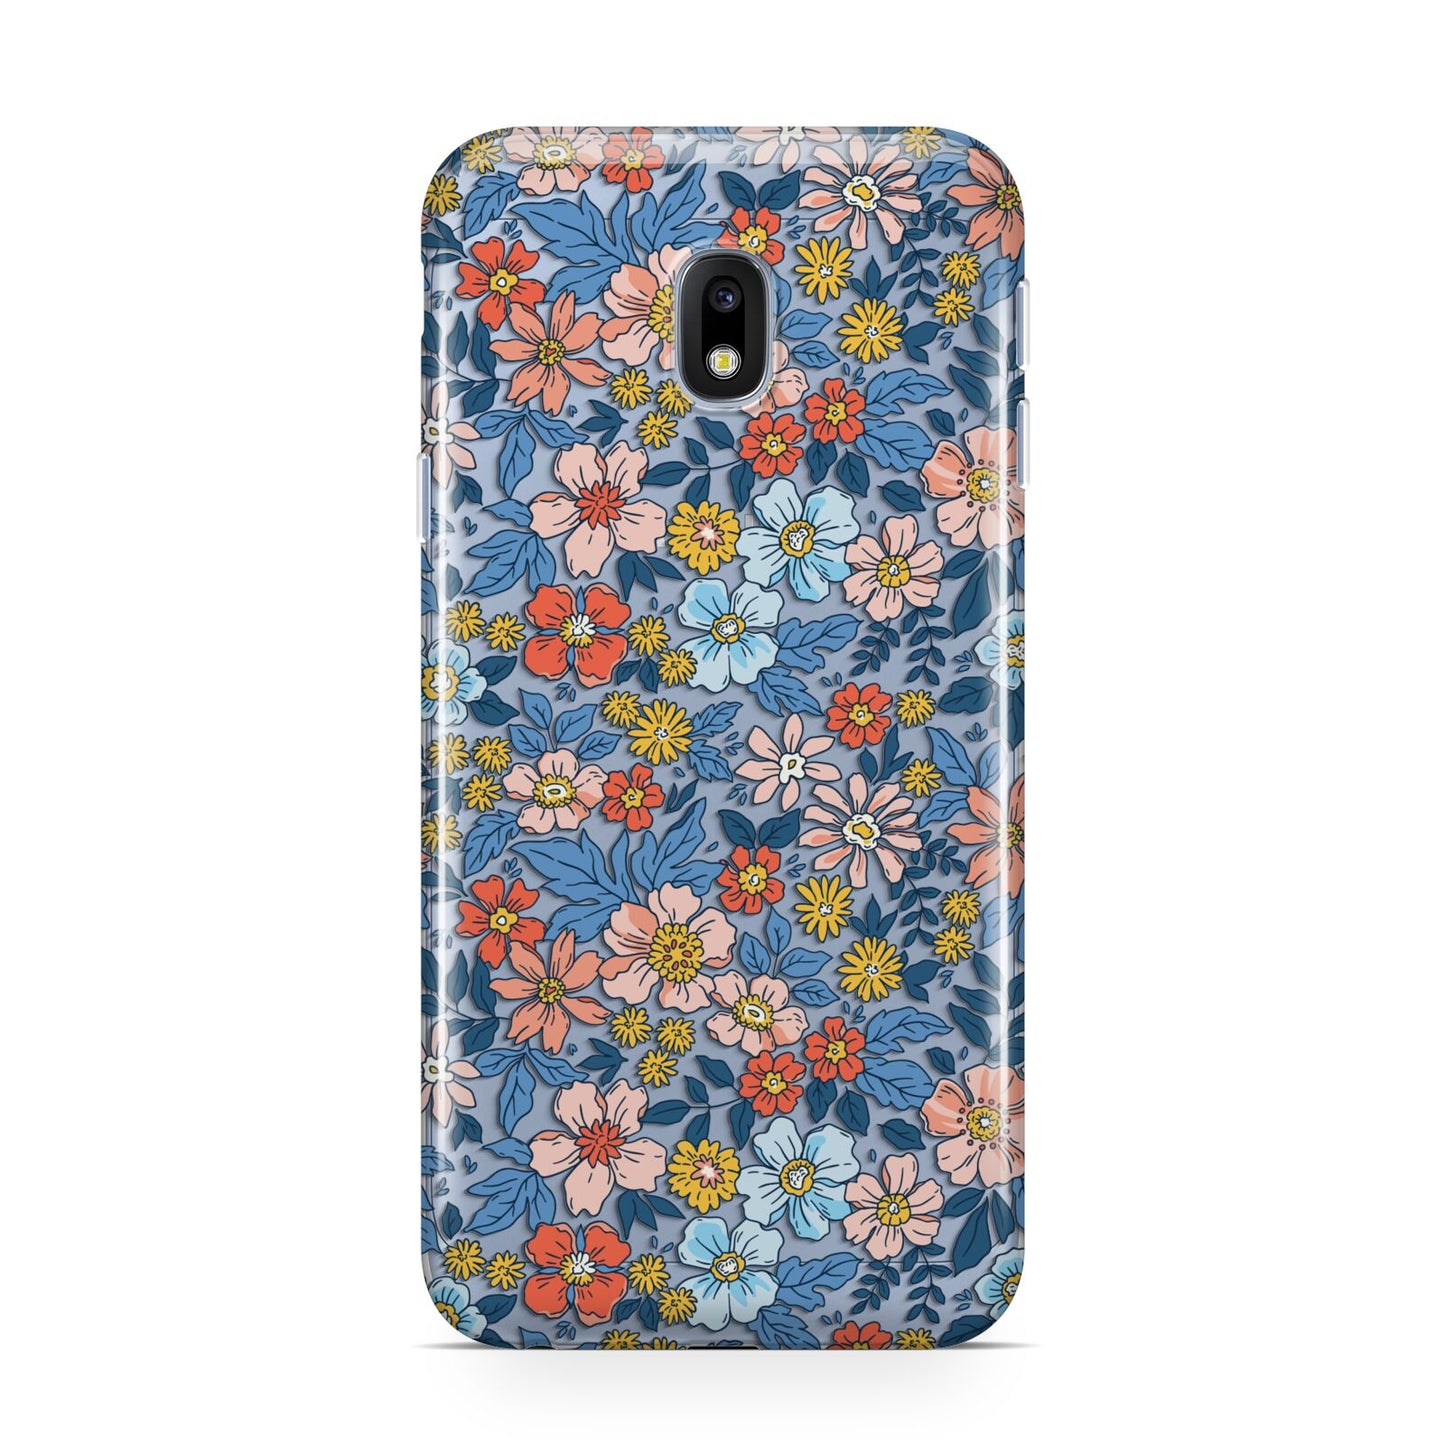 Vintage Flower Samsung Galaxy J3 2017 Case